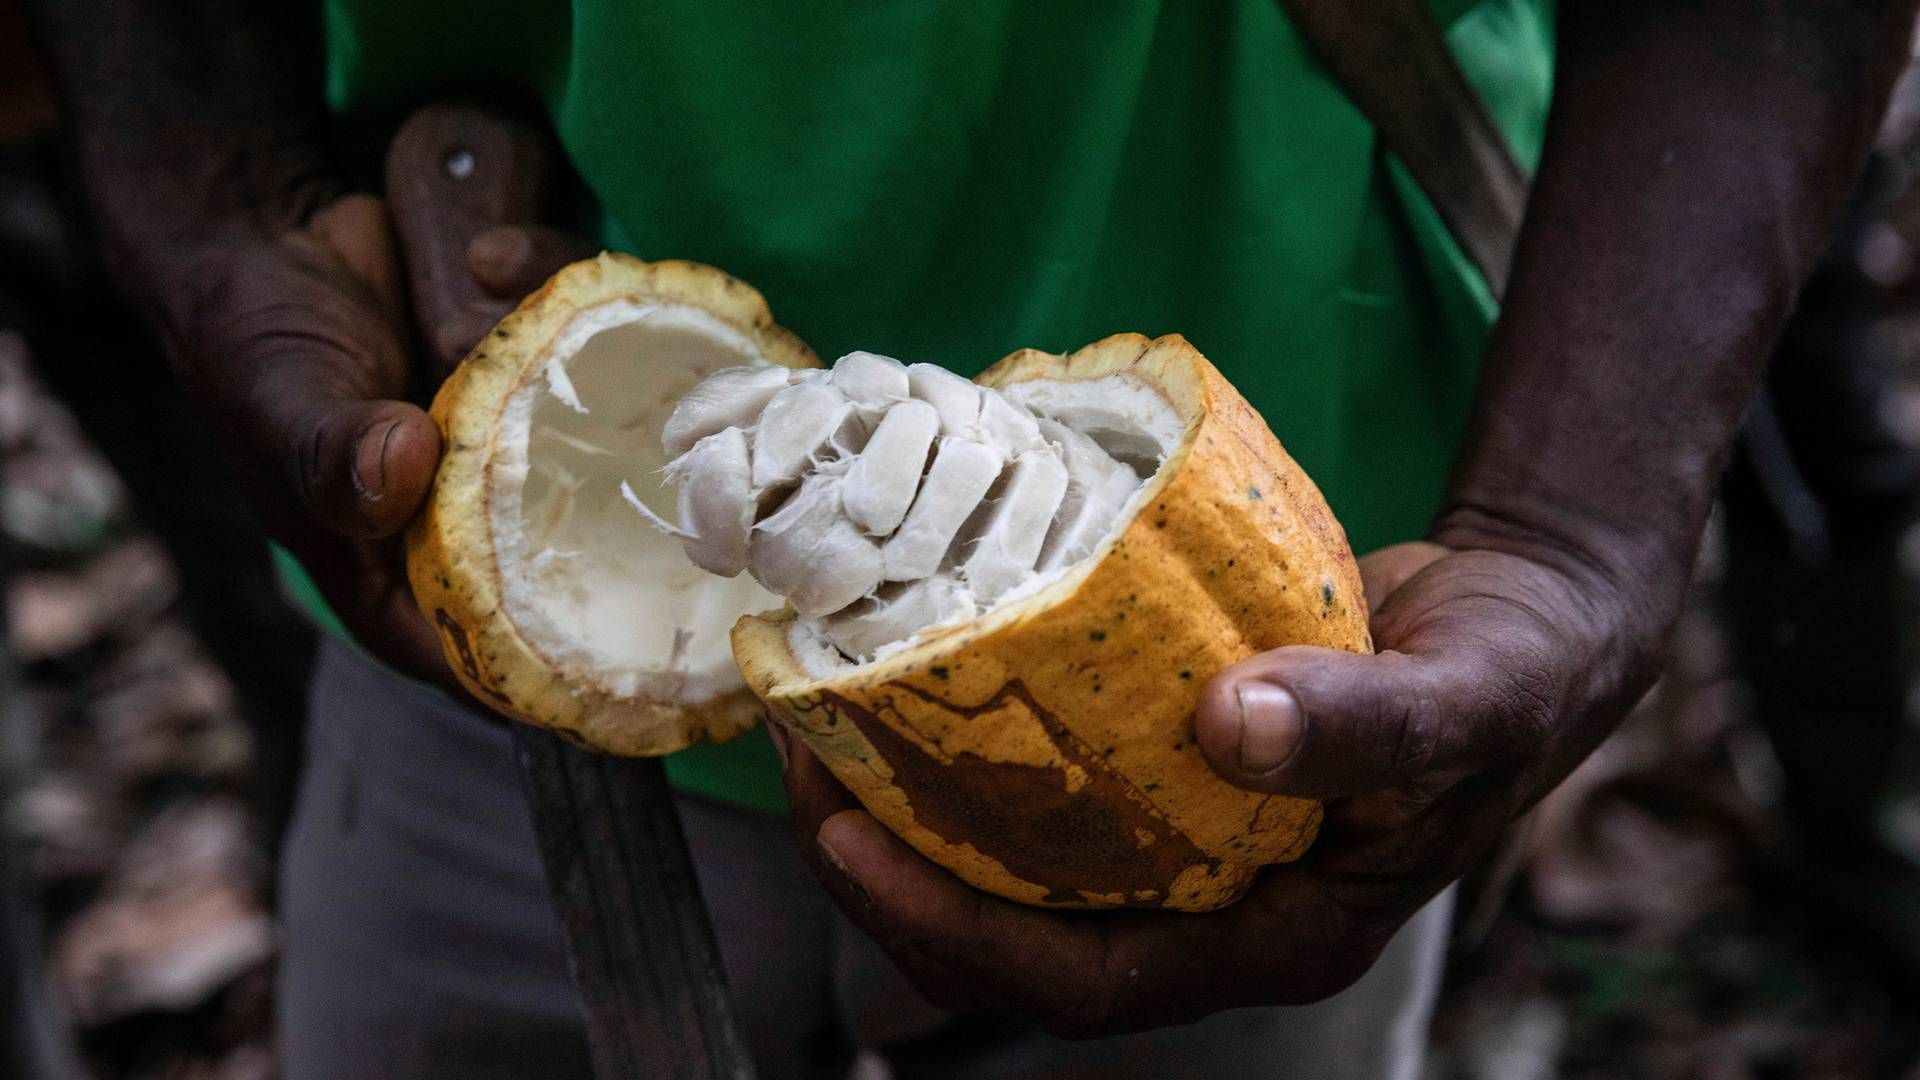 Et forskningsprosjekt viser at gullgruver i økende grad tar over landområder som brukes til å dyrke kakao. | Foto: AP Photo/Sophie Garcia